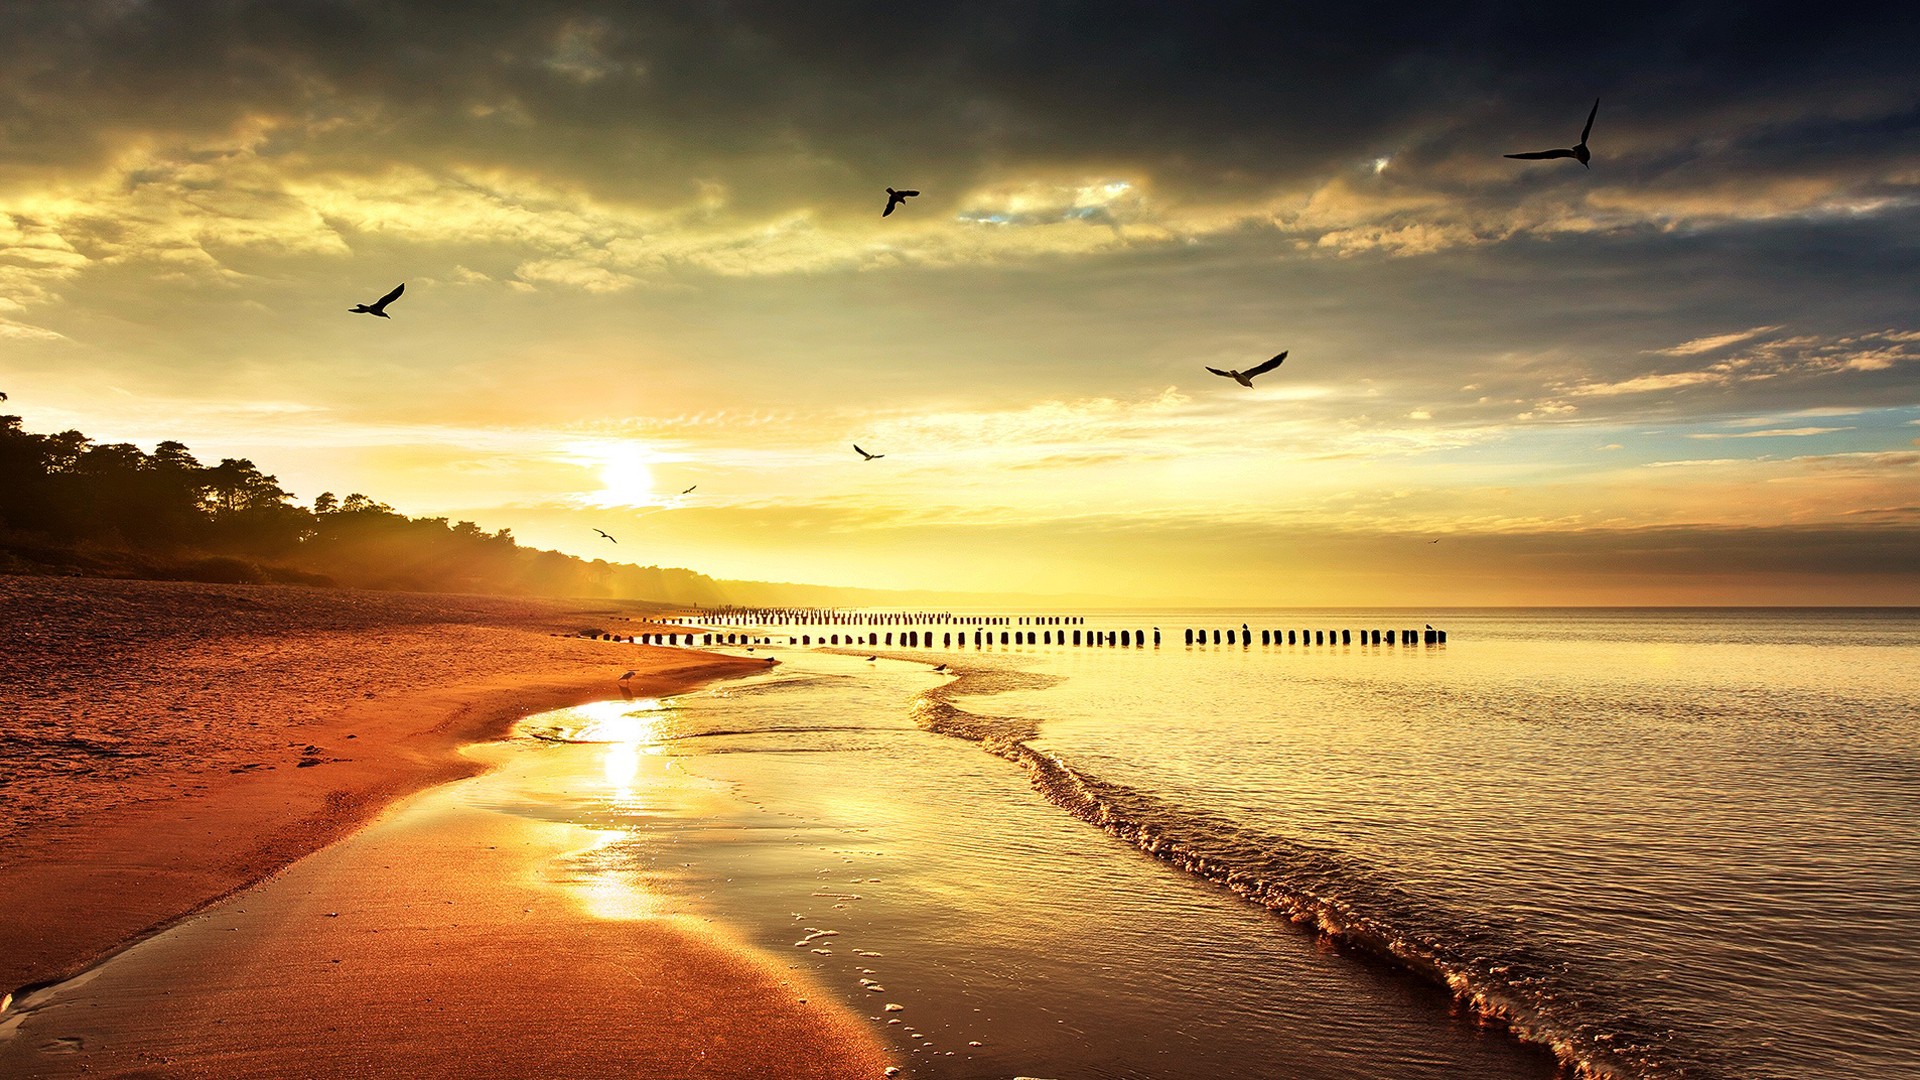 For Beach Sunset Wallpaper HD